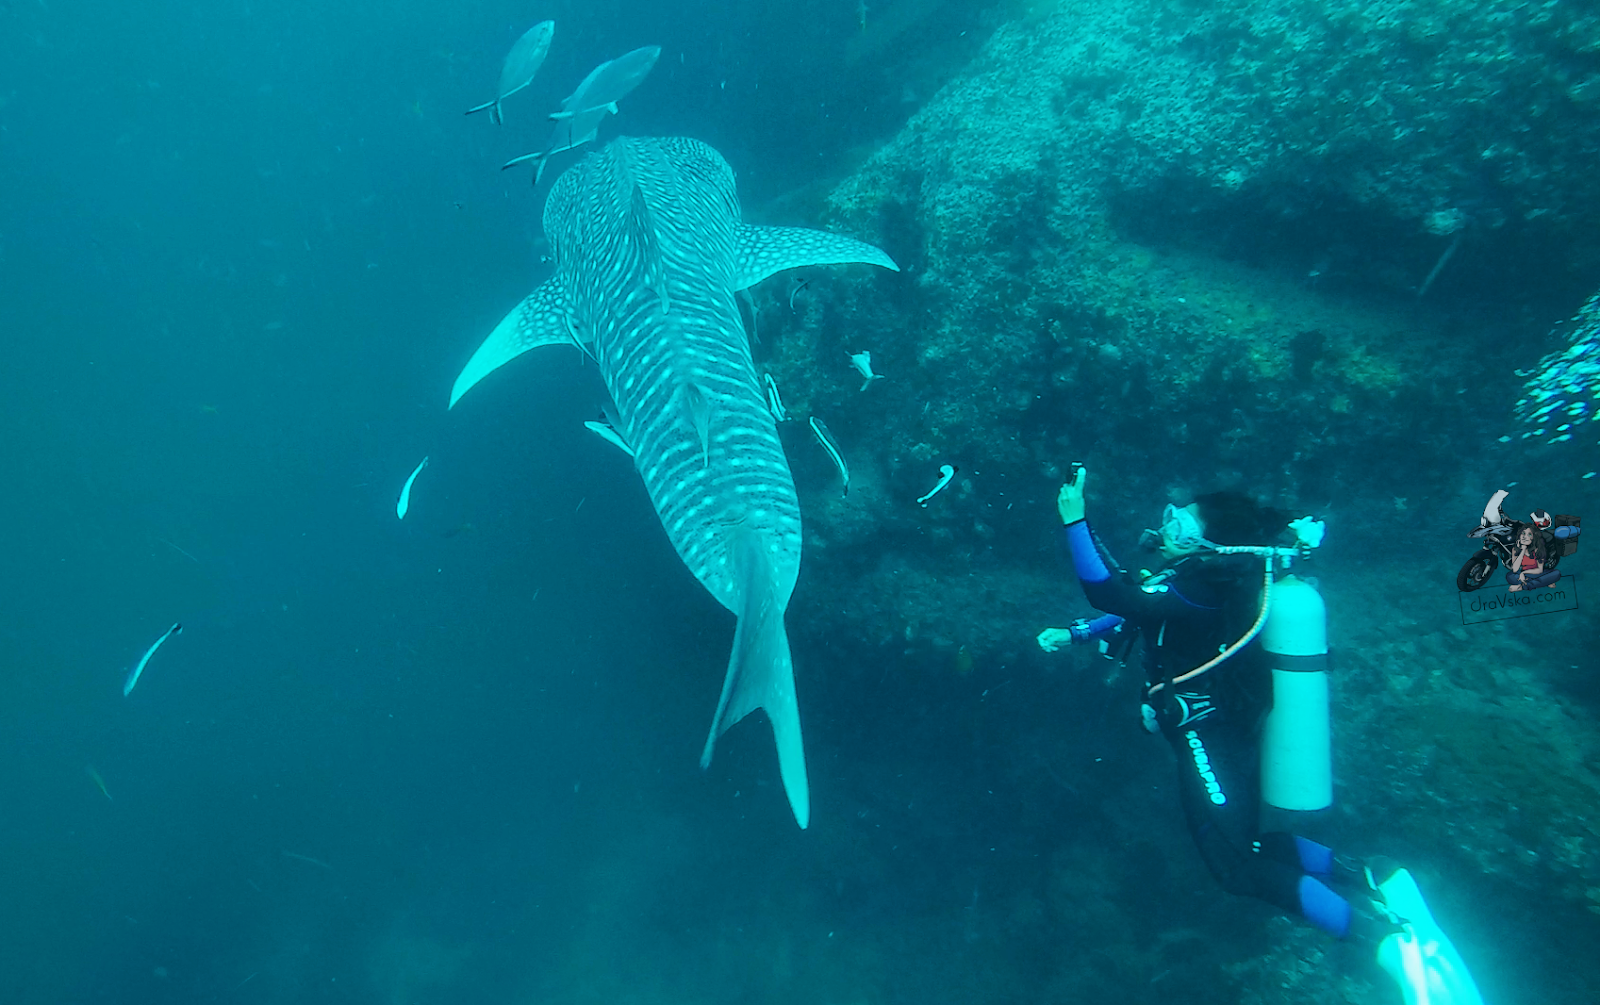 TAJLANDIA - NAJWIĘKSZA RYBA ŚWIATA - nurkowanie z rekinami wielorybimi na Sail Rock